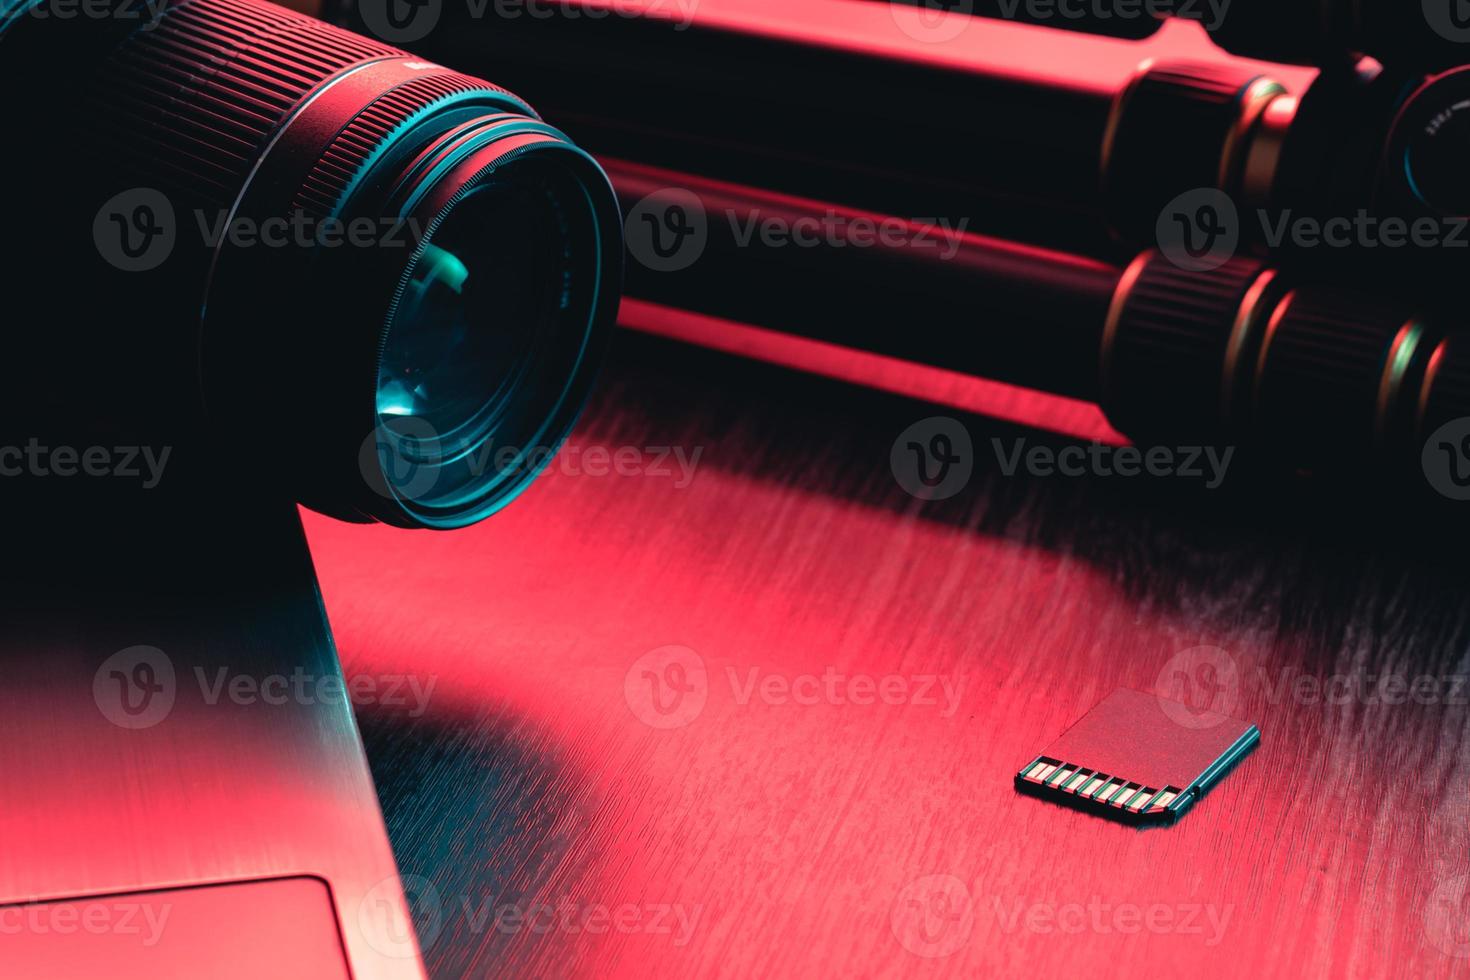 lente da câmera, cartão, laptop e tripé na mesa de madeira. área de trabalho da mesa. luz vermelha e azul foto